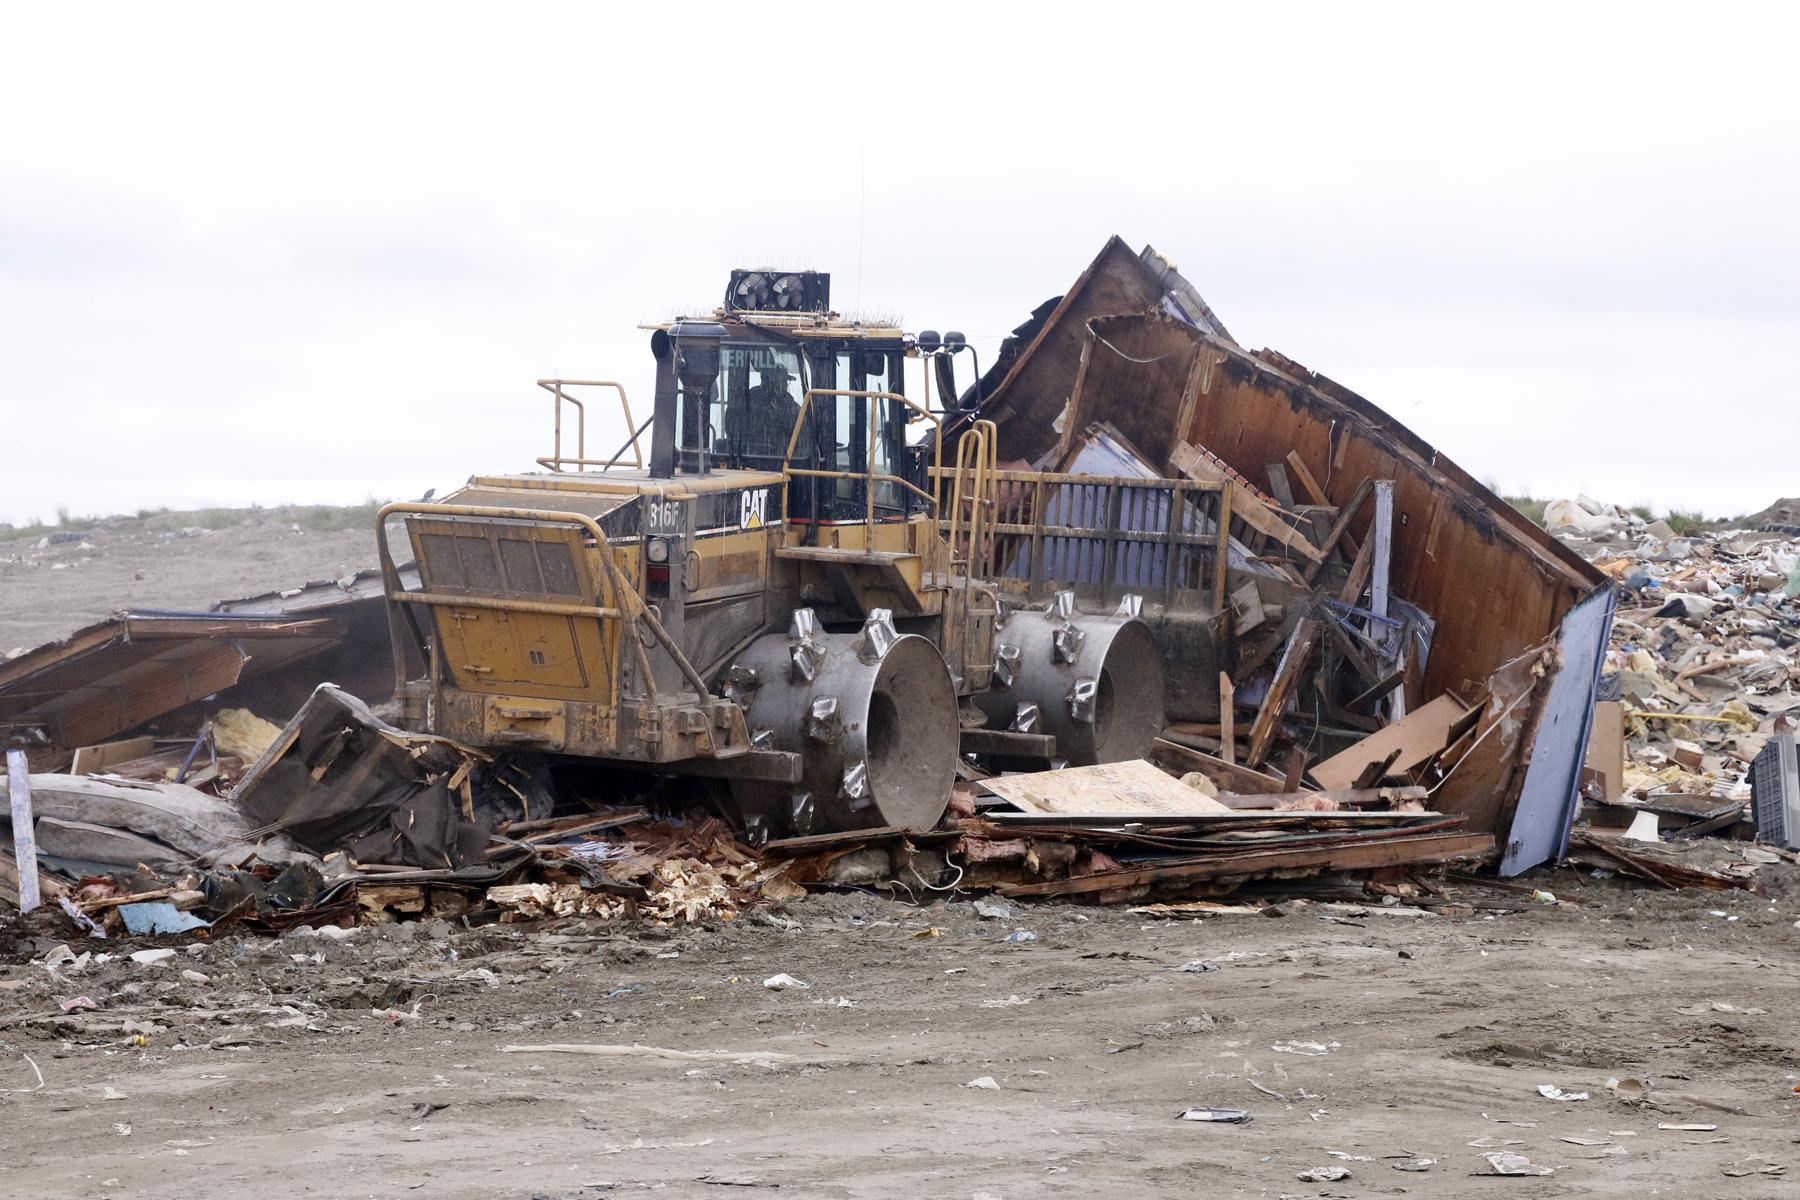 David Stovner, landfill manager, pushing debris (Photo by Dean Swope, KYUK - Bethel)